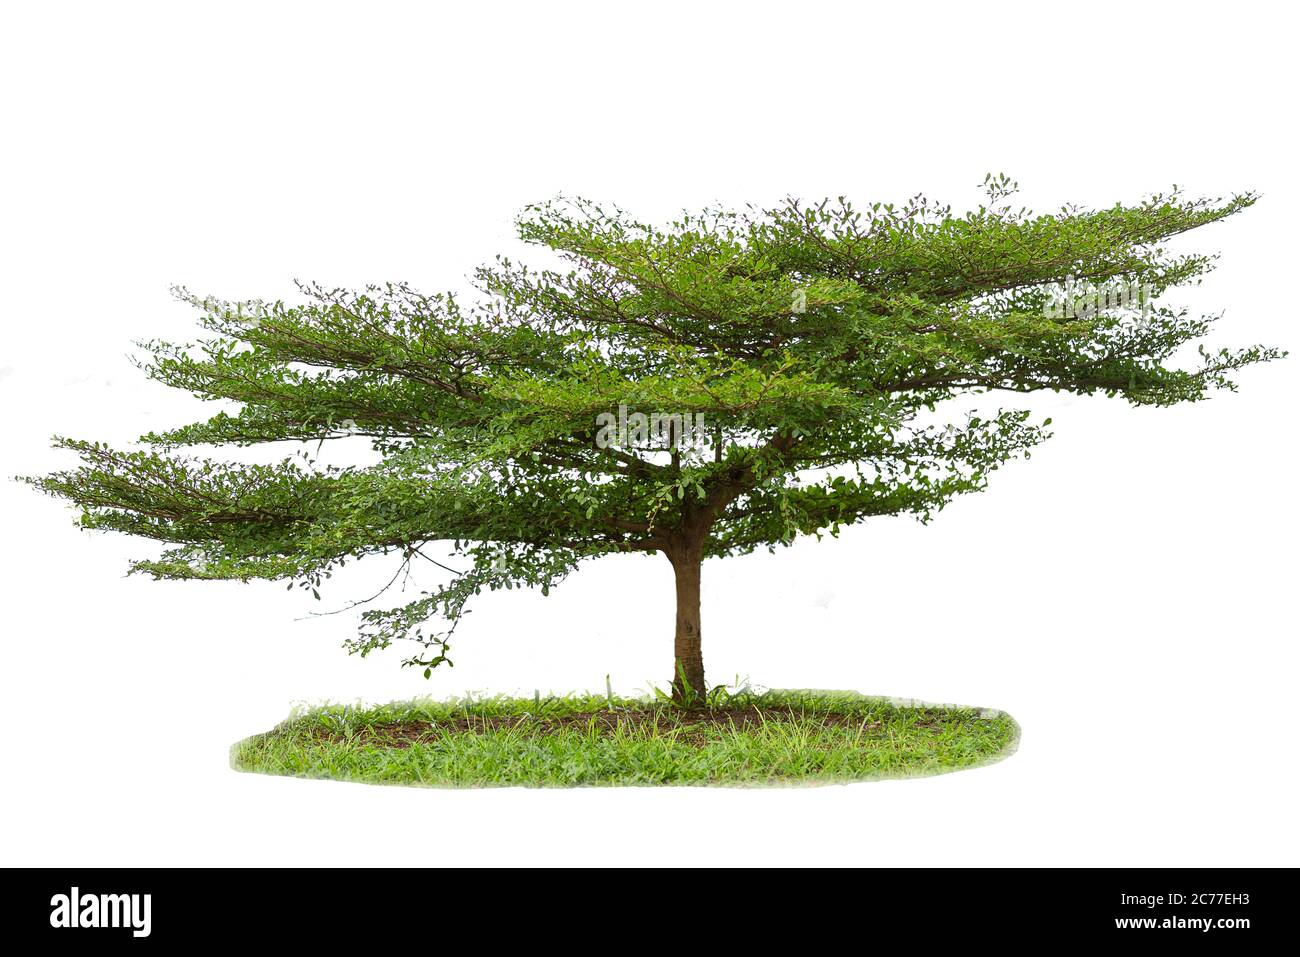 Terminalia ivorensis tree isolated on white background Stock Photo